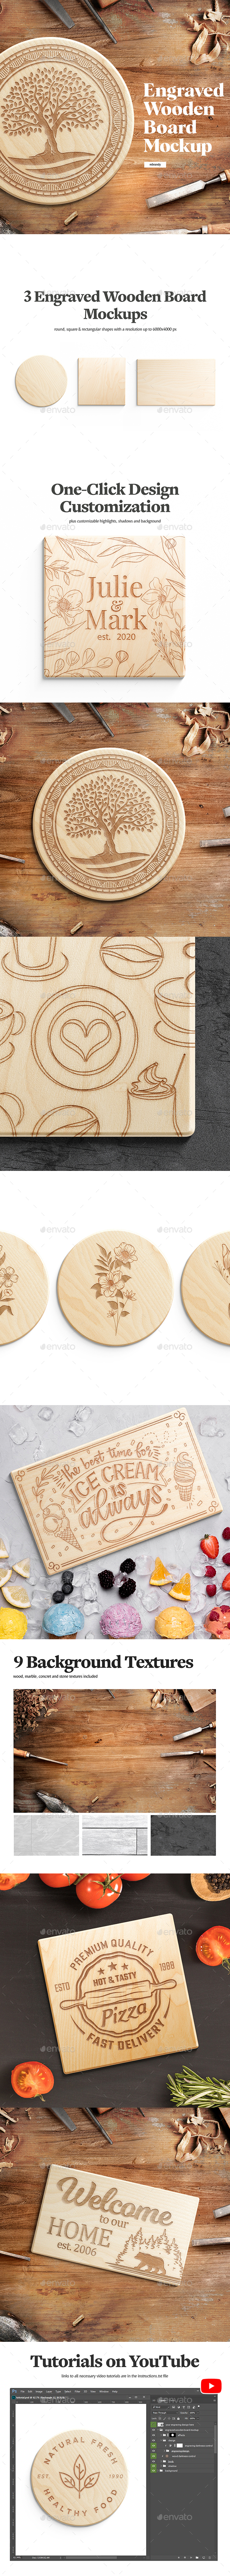 [DOWNLOAD]Engraved Wooden Board Mockups